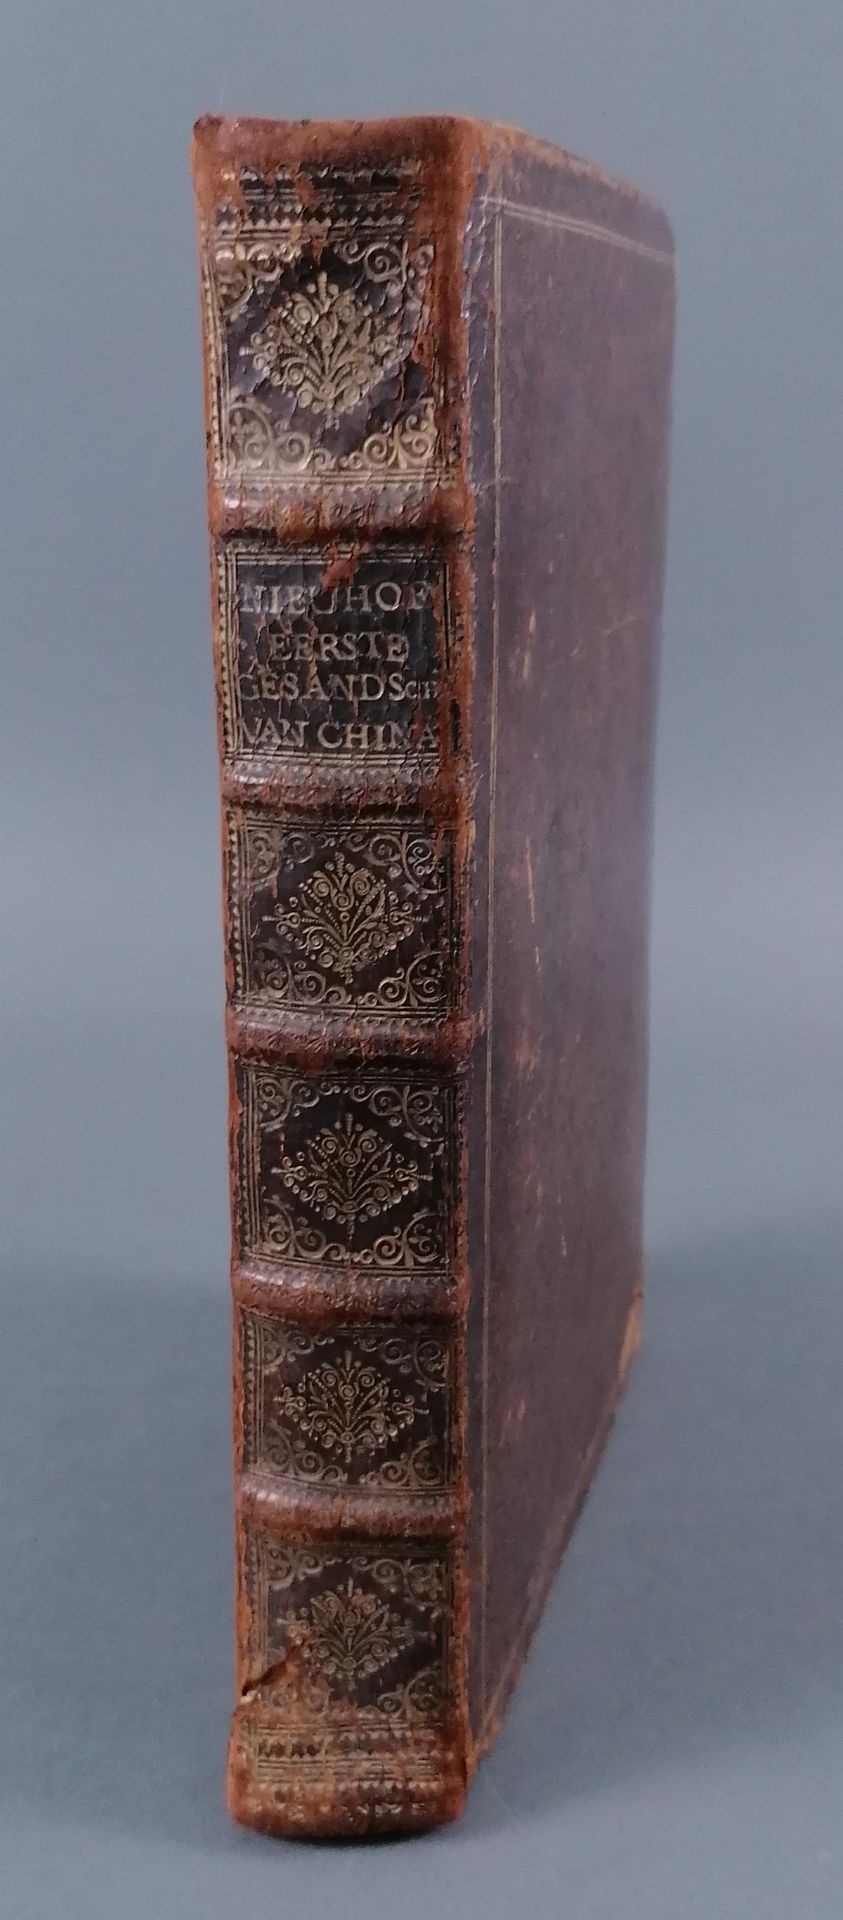 Nieuhofs China-Buch. 1665. (Die Gesandtschaft der Niederländischen Ostindienkompanie an den großen T - Image 2 of 26